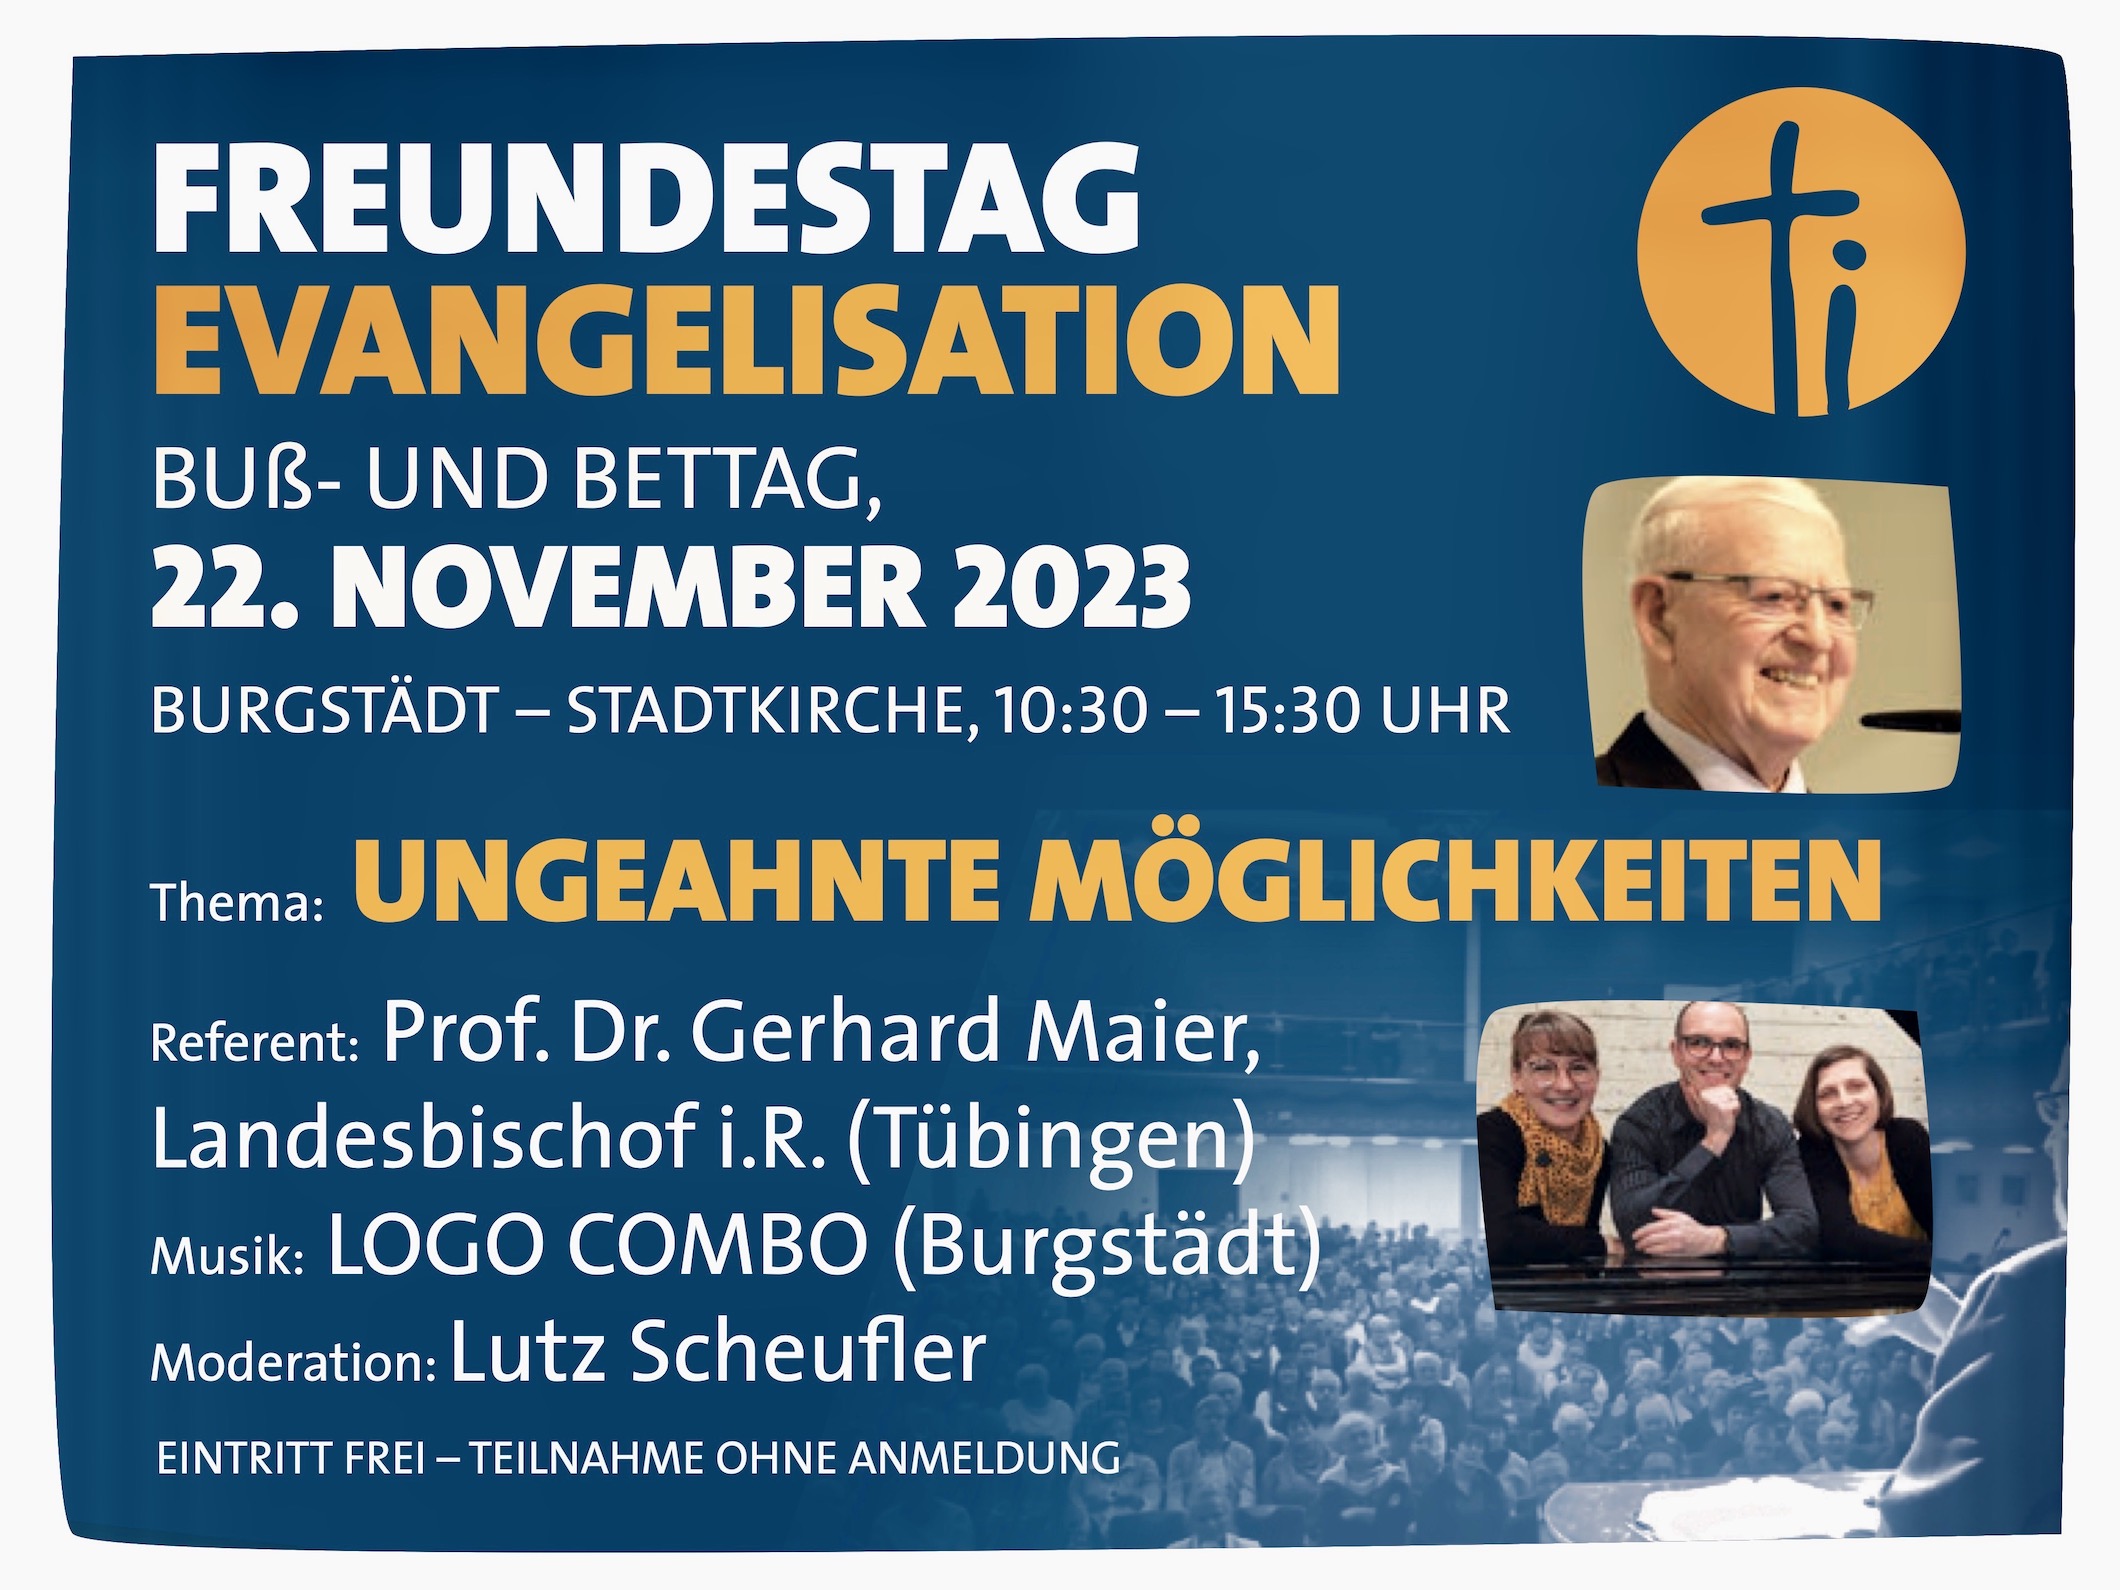 Plakat Freundestag Evangelisation am 22.11.2023 in Burgstädt